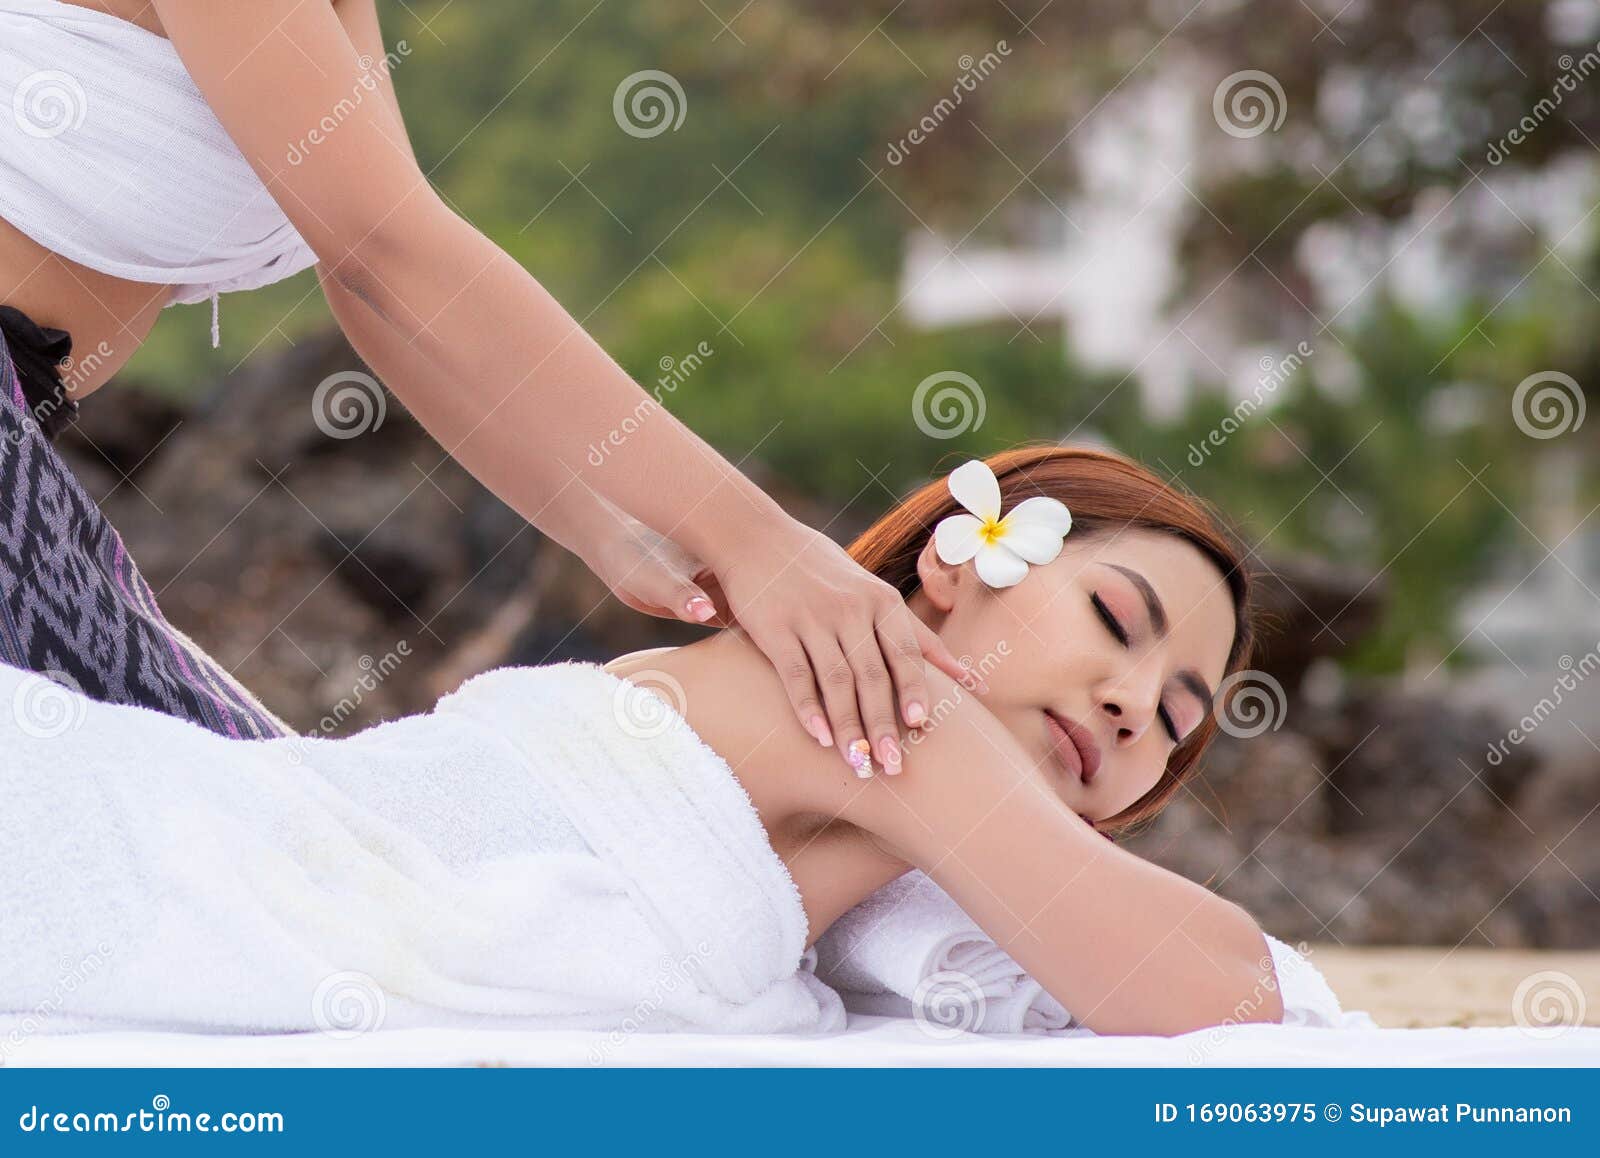 Beautiful Asian Woman Enjoying Spa Massage Therapy on the Beach Stock Image  image